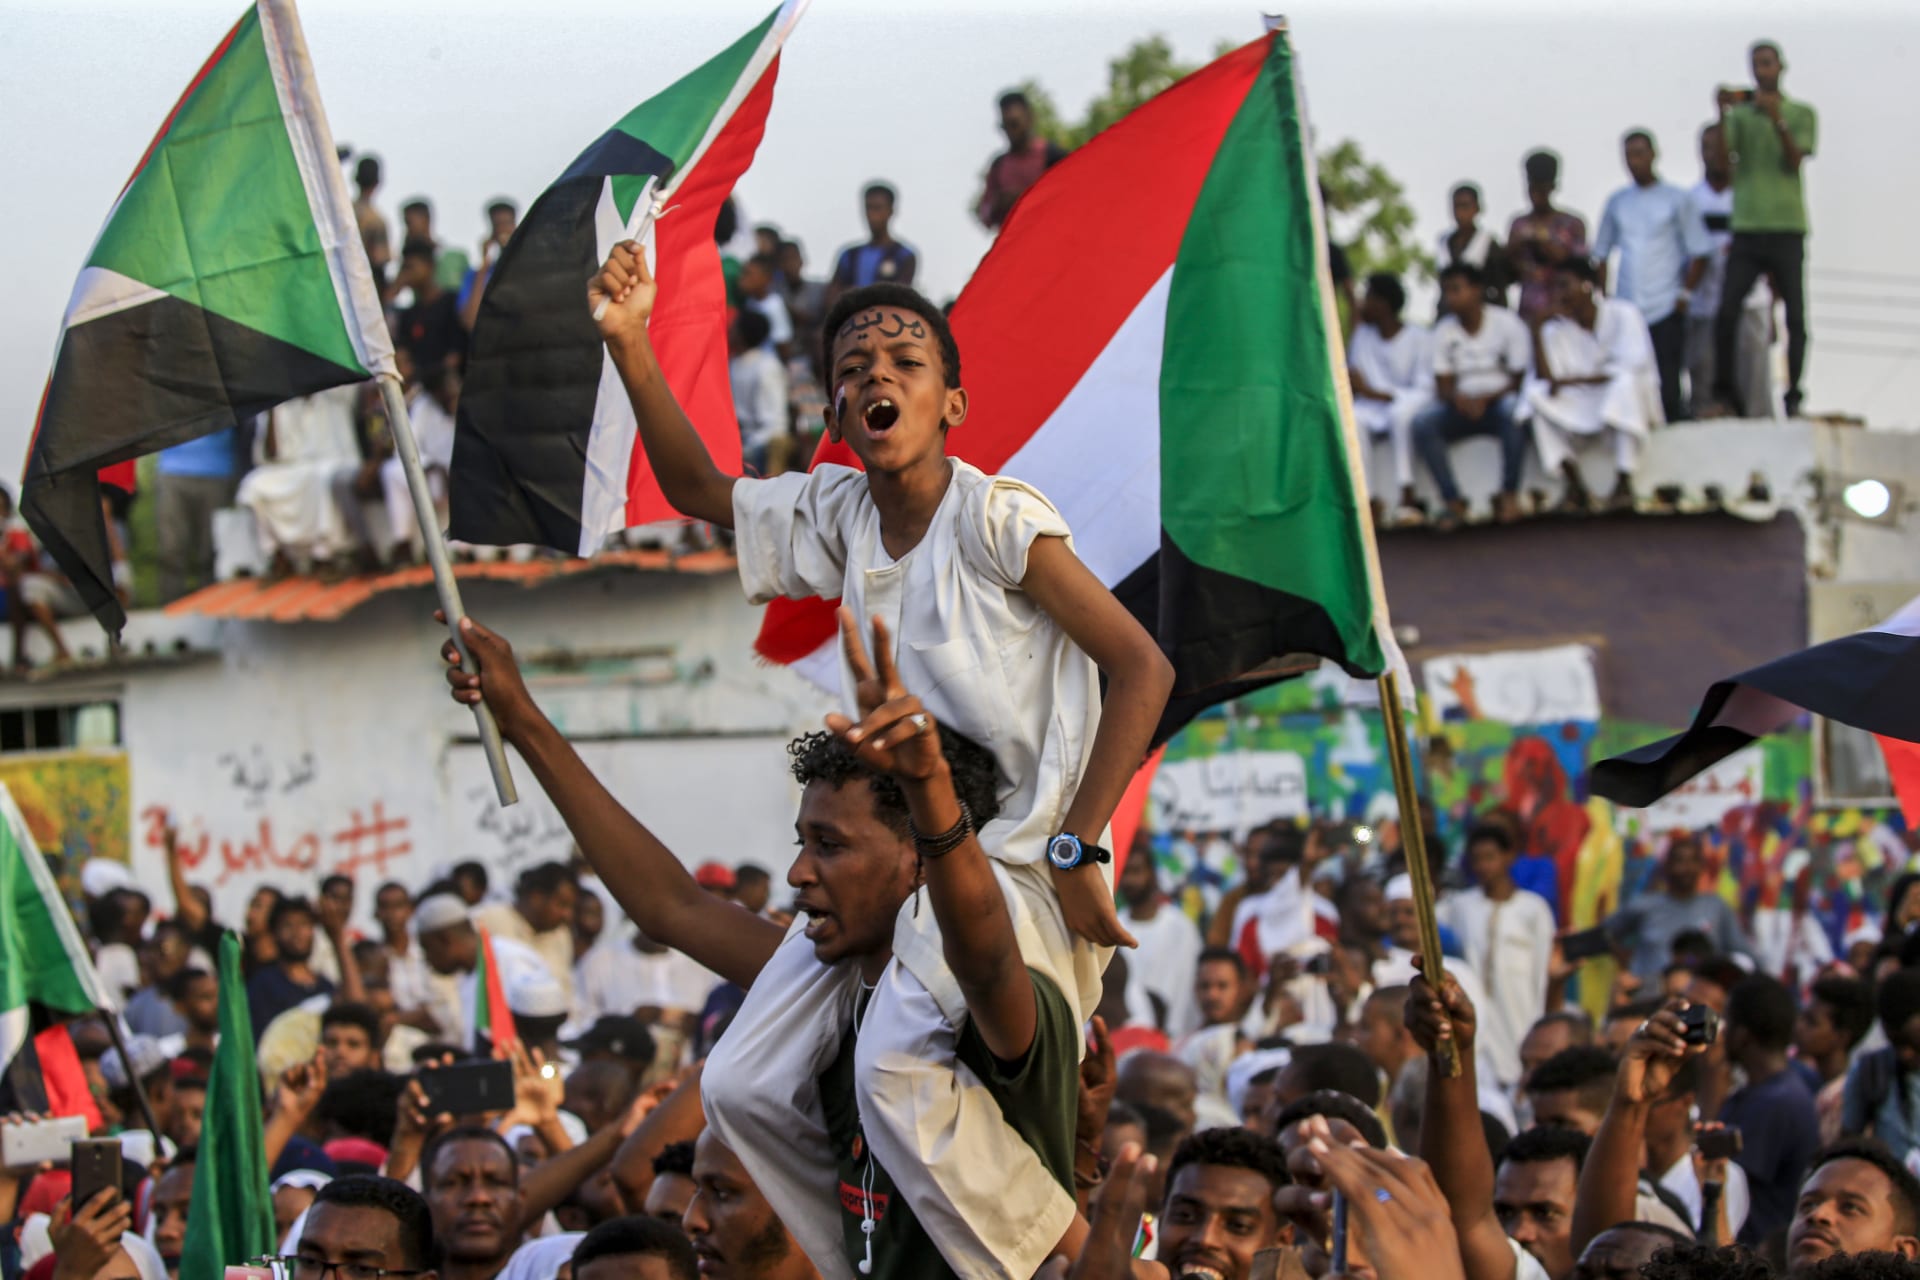 الإعلان عن موعد التوقيع على اتفاق المعارضة والمجلس العسكري في السودان